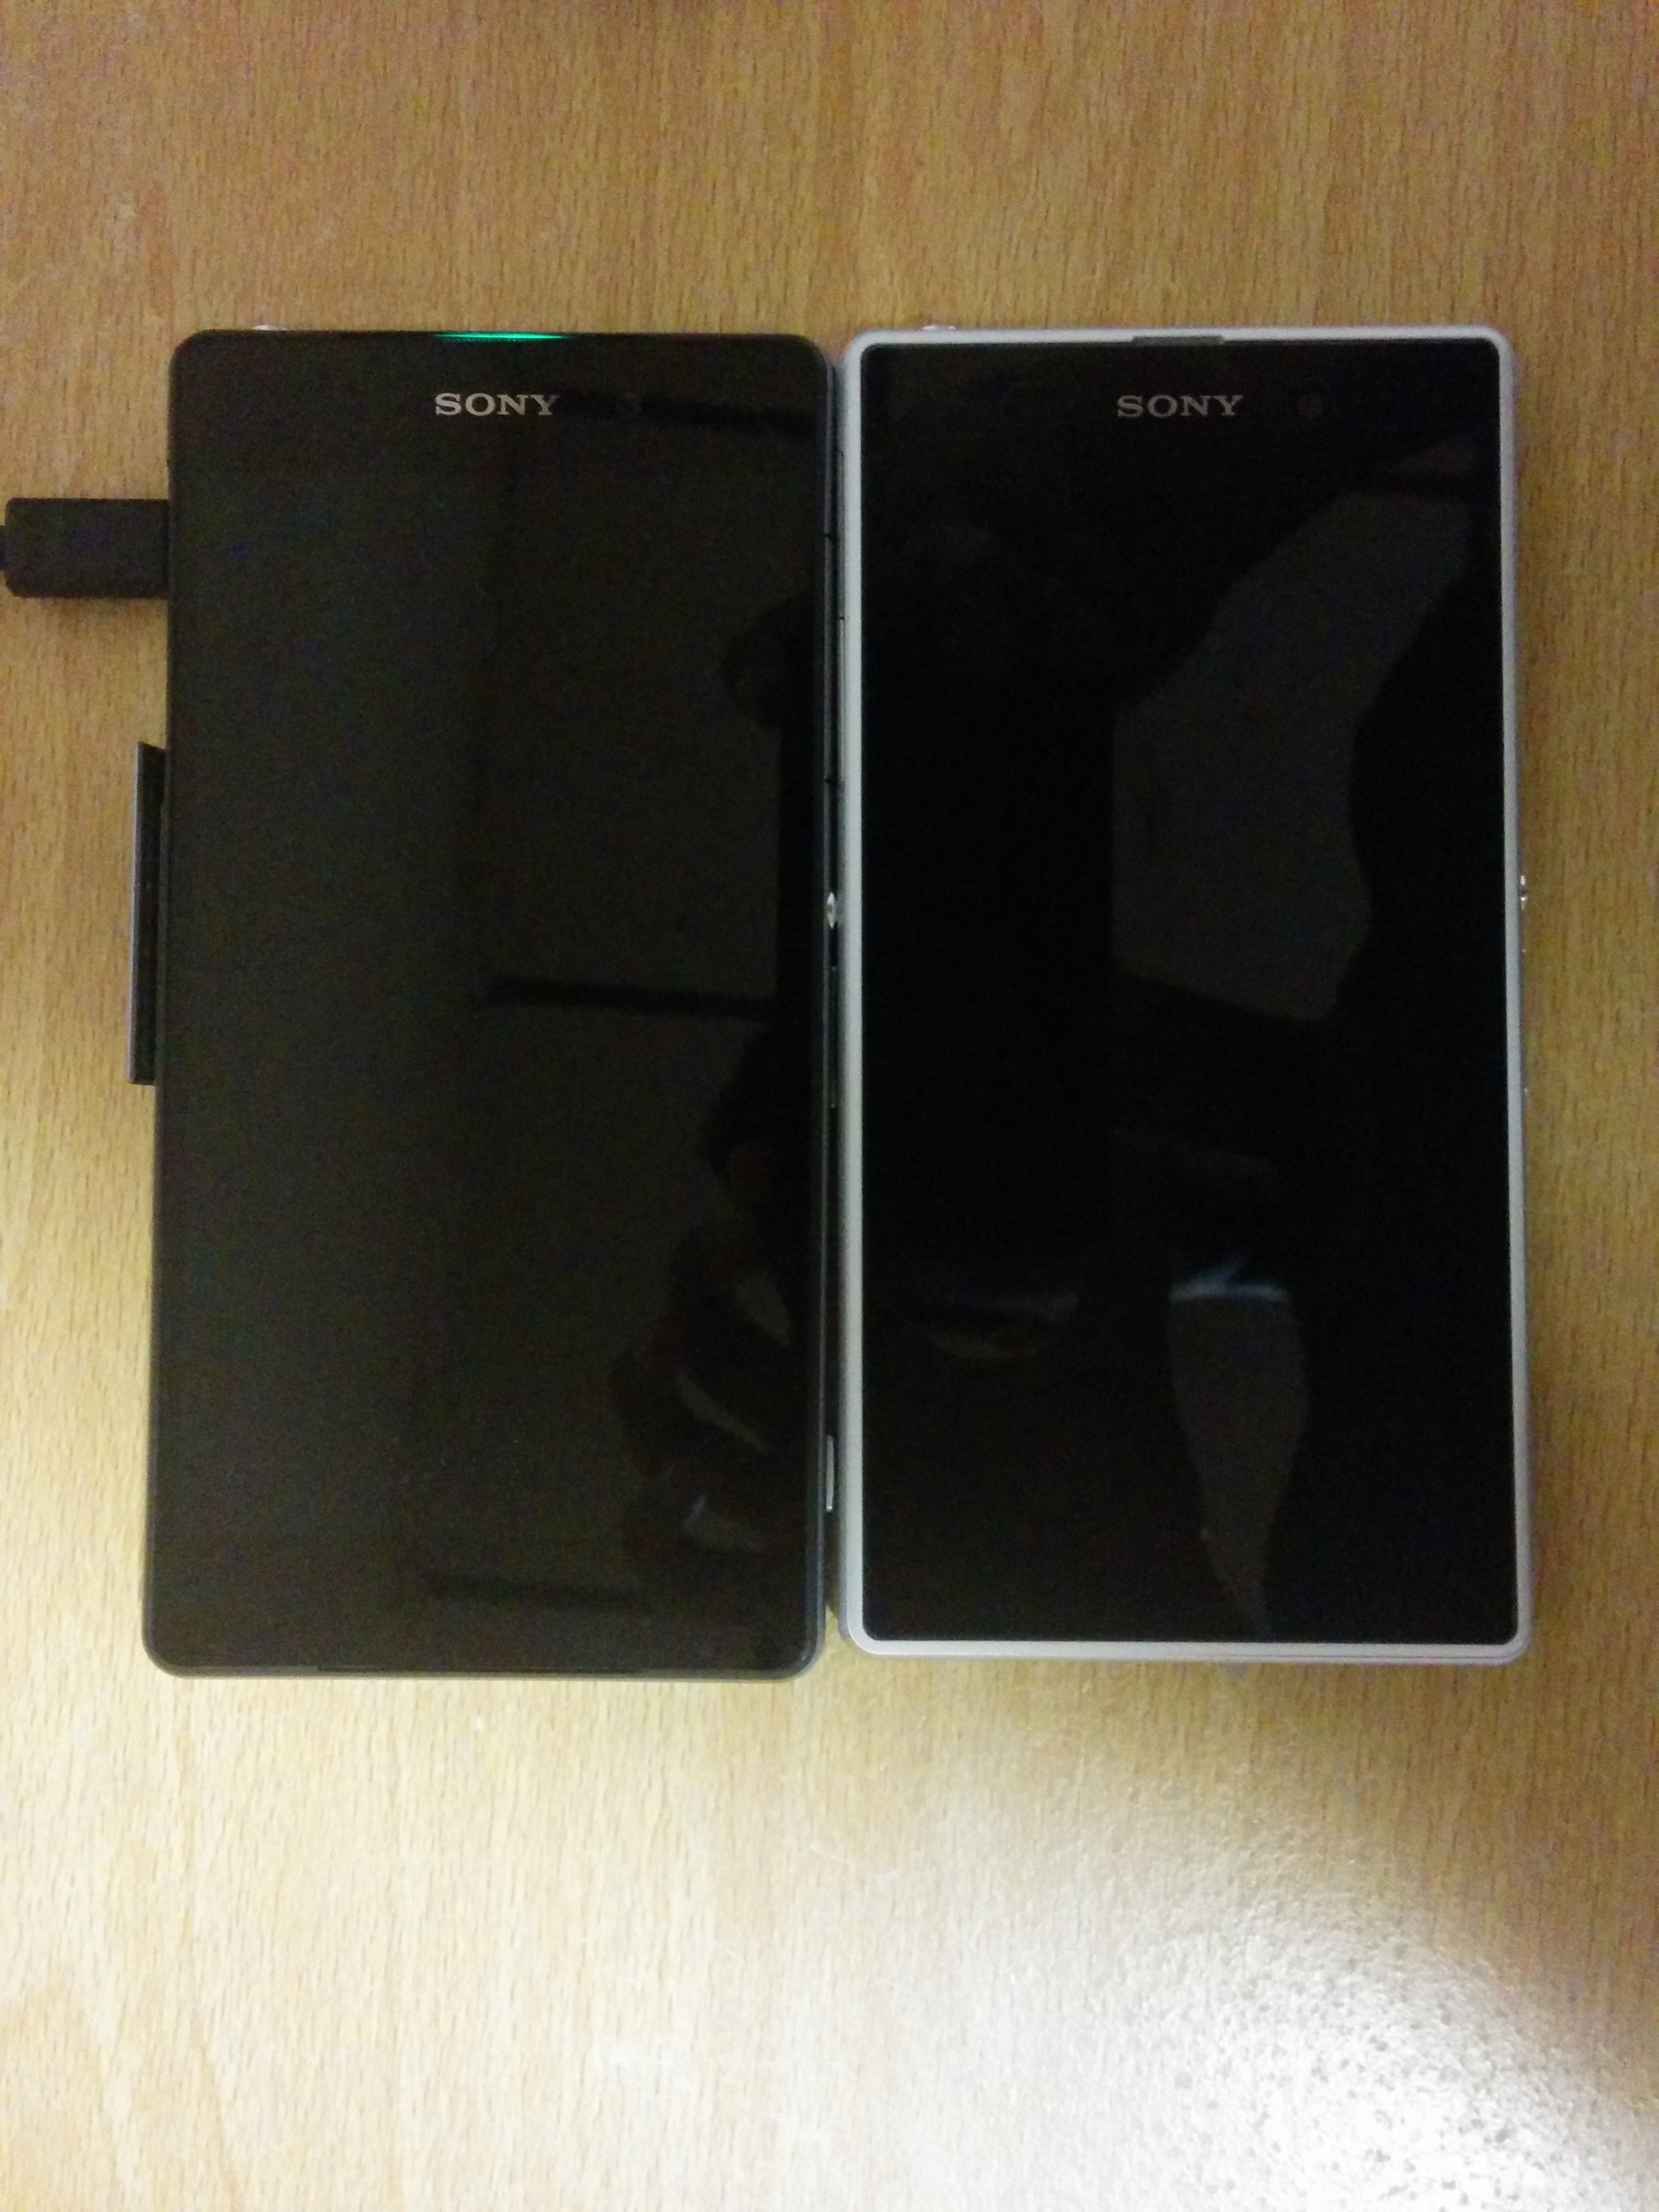 Xperia Z1 vs Sony D6503 aka Sony Sirius Comparison Photos